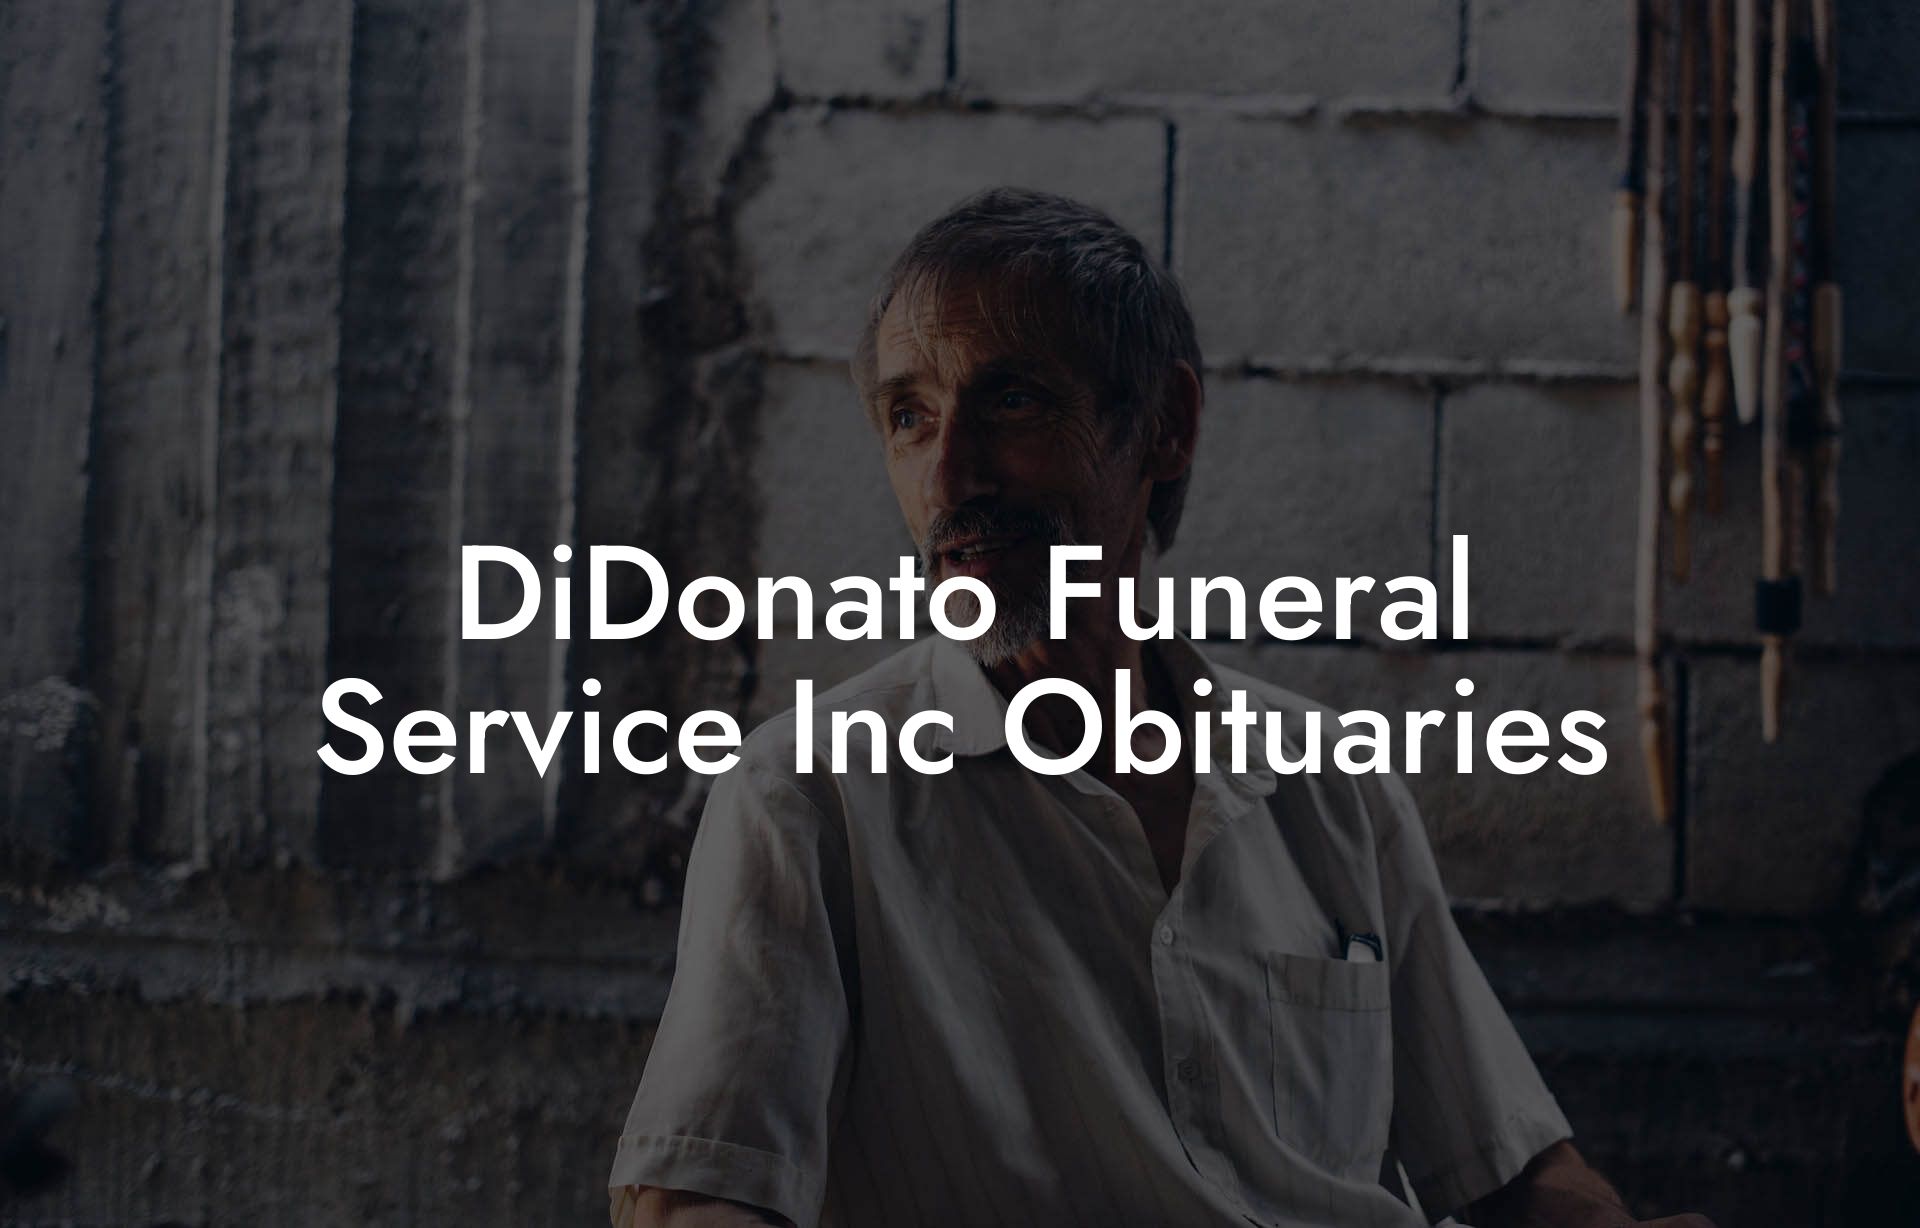 DiDonato Funeral Service Inc Obituaries